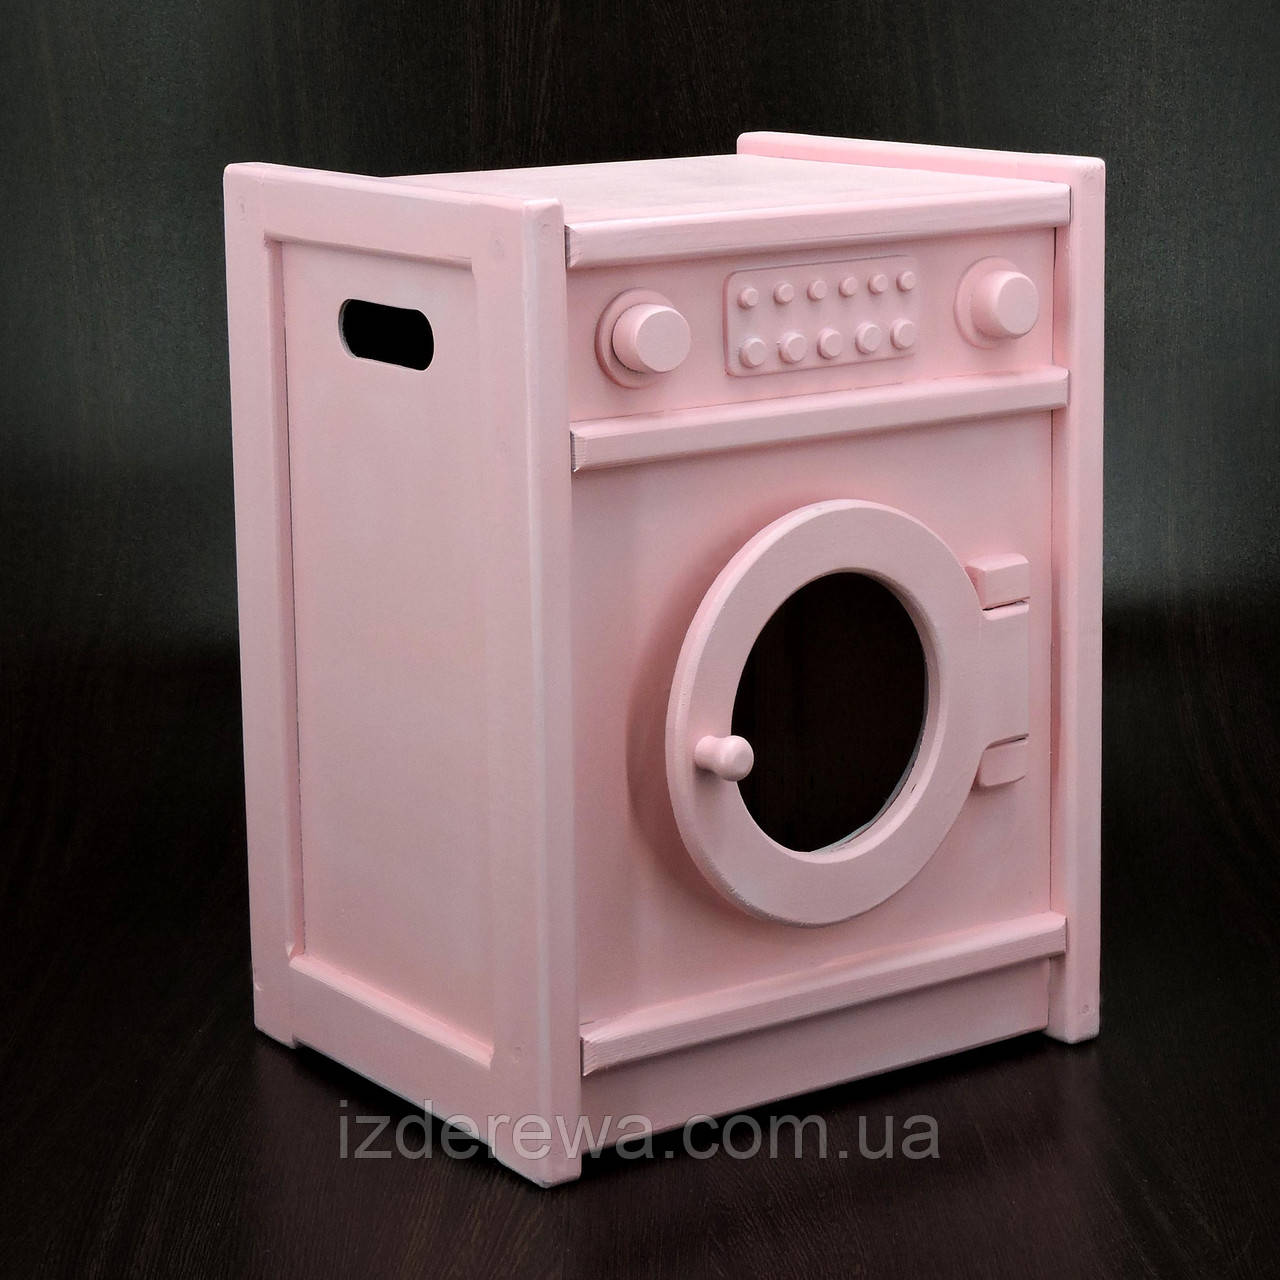 Іграшкова пральна машина "Даміан" барбі